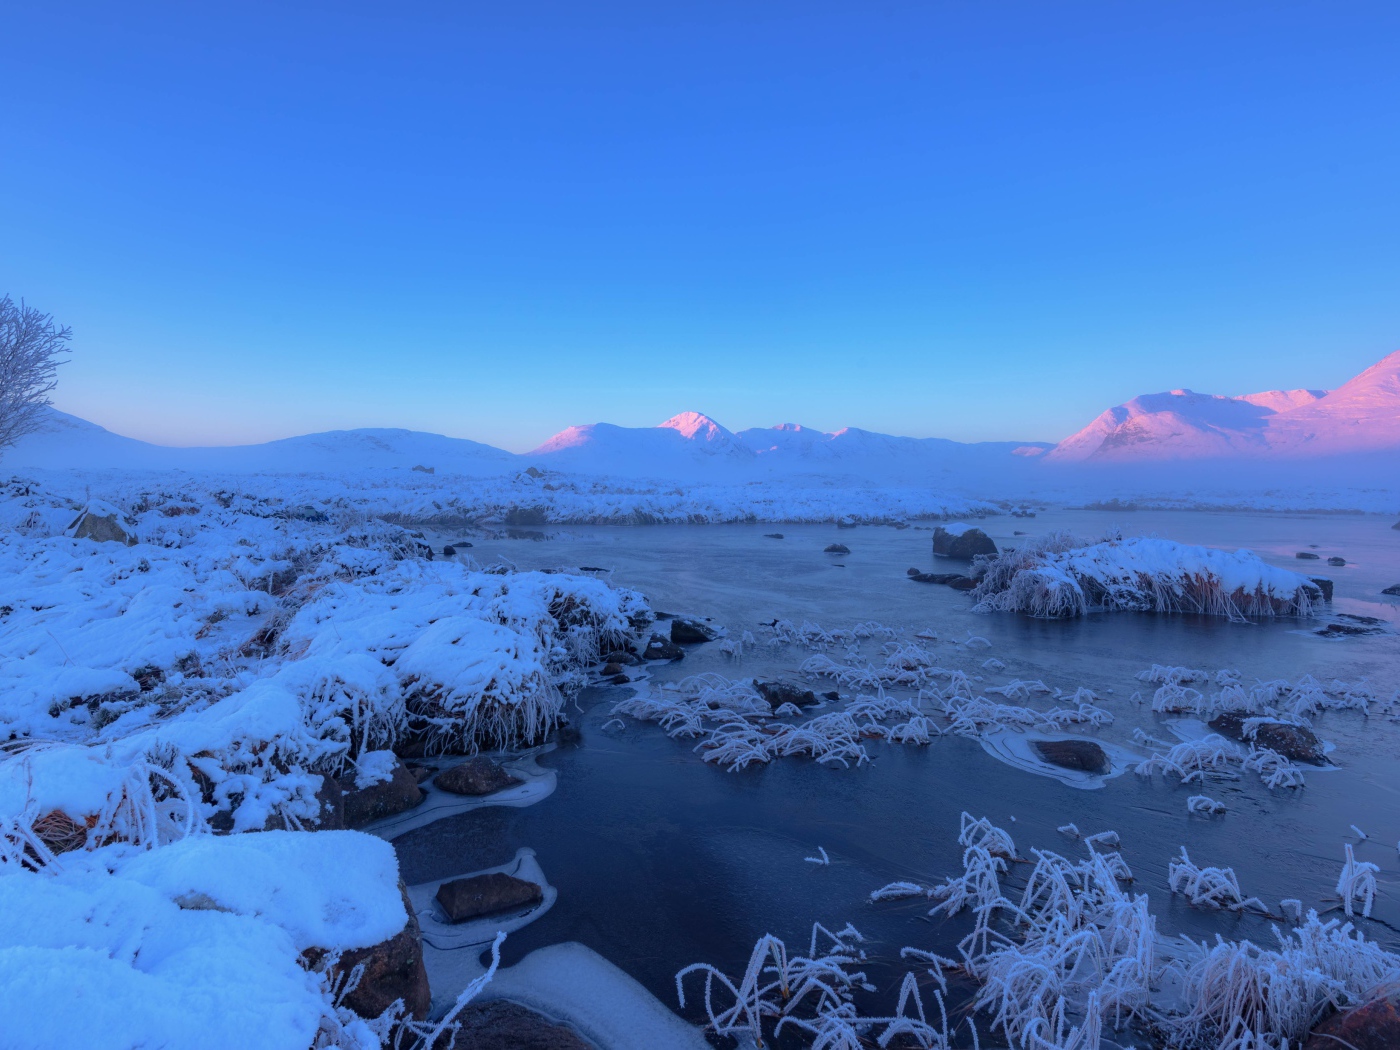 Розовый закат солнца над заснеженными горами и покрытым льдом озером